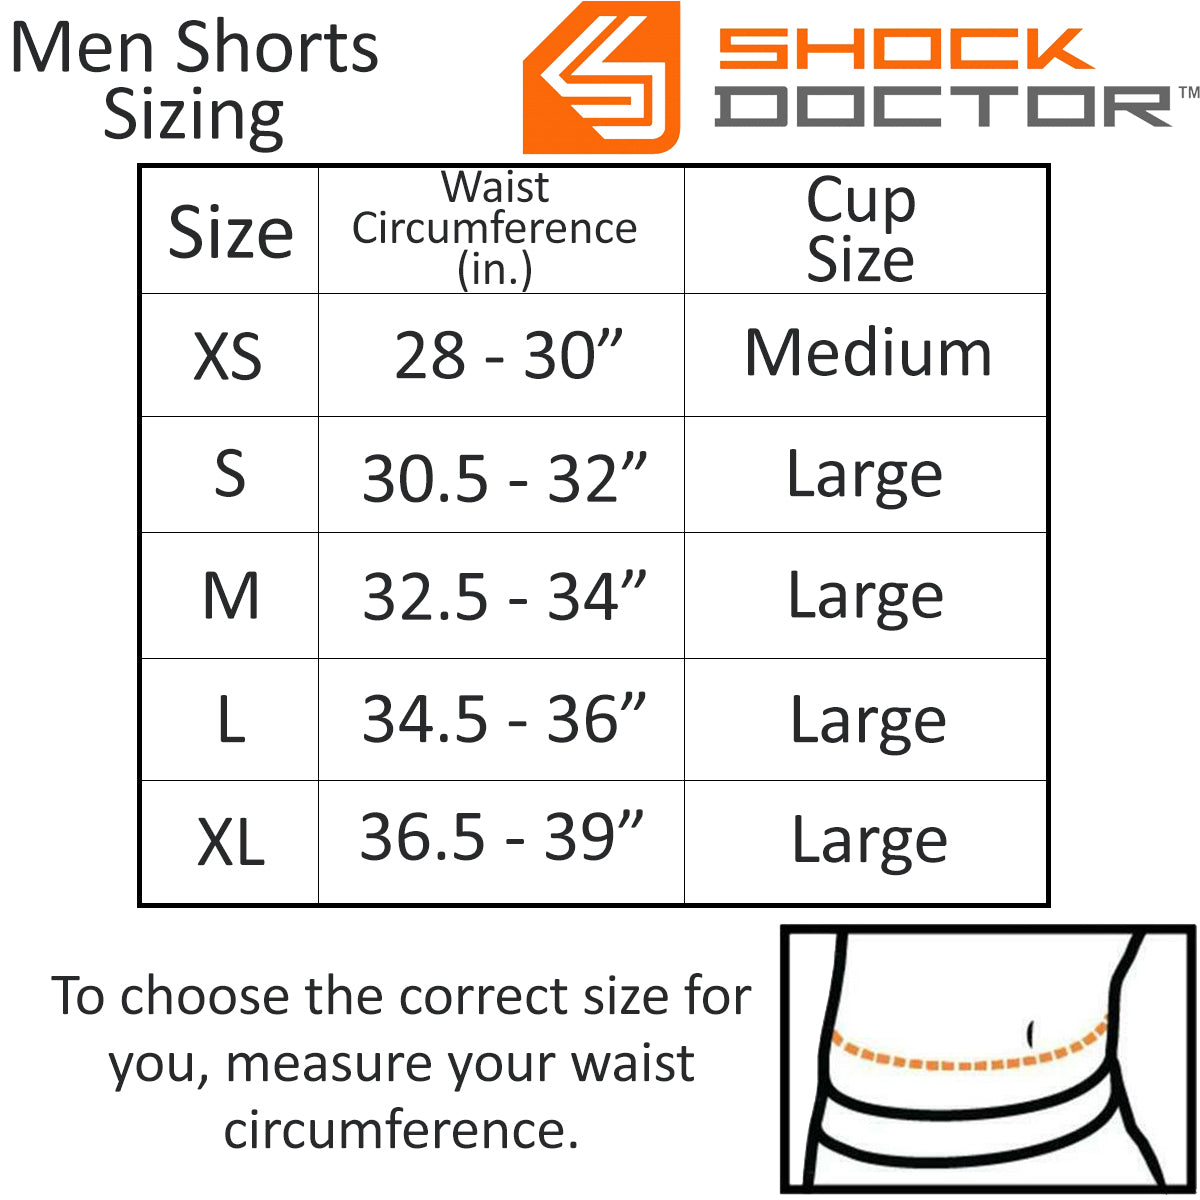 Core Compression Shorts w/ Bio-Flex Athletic Cup